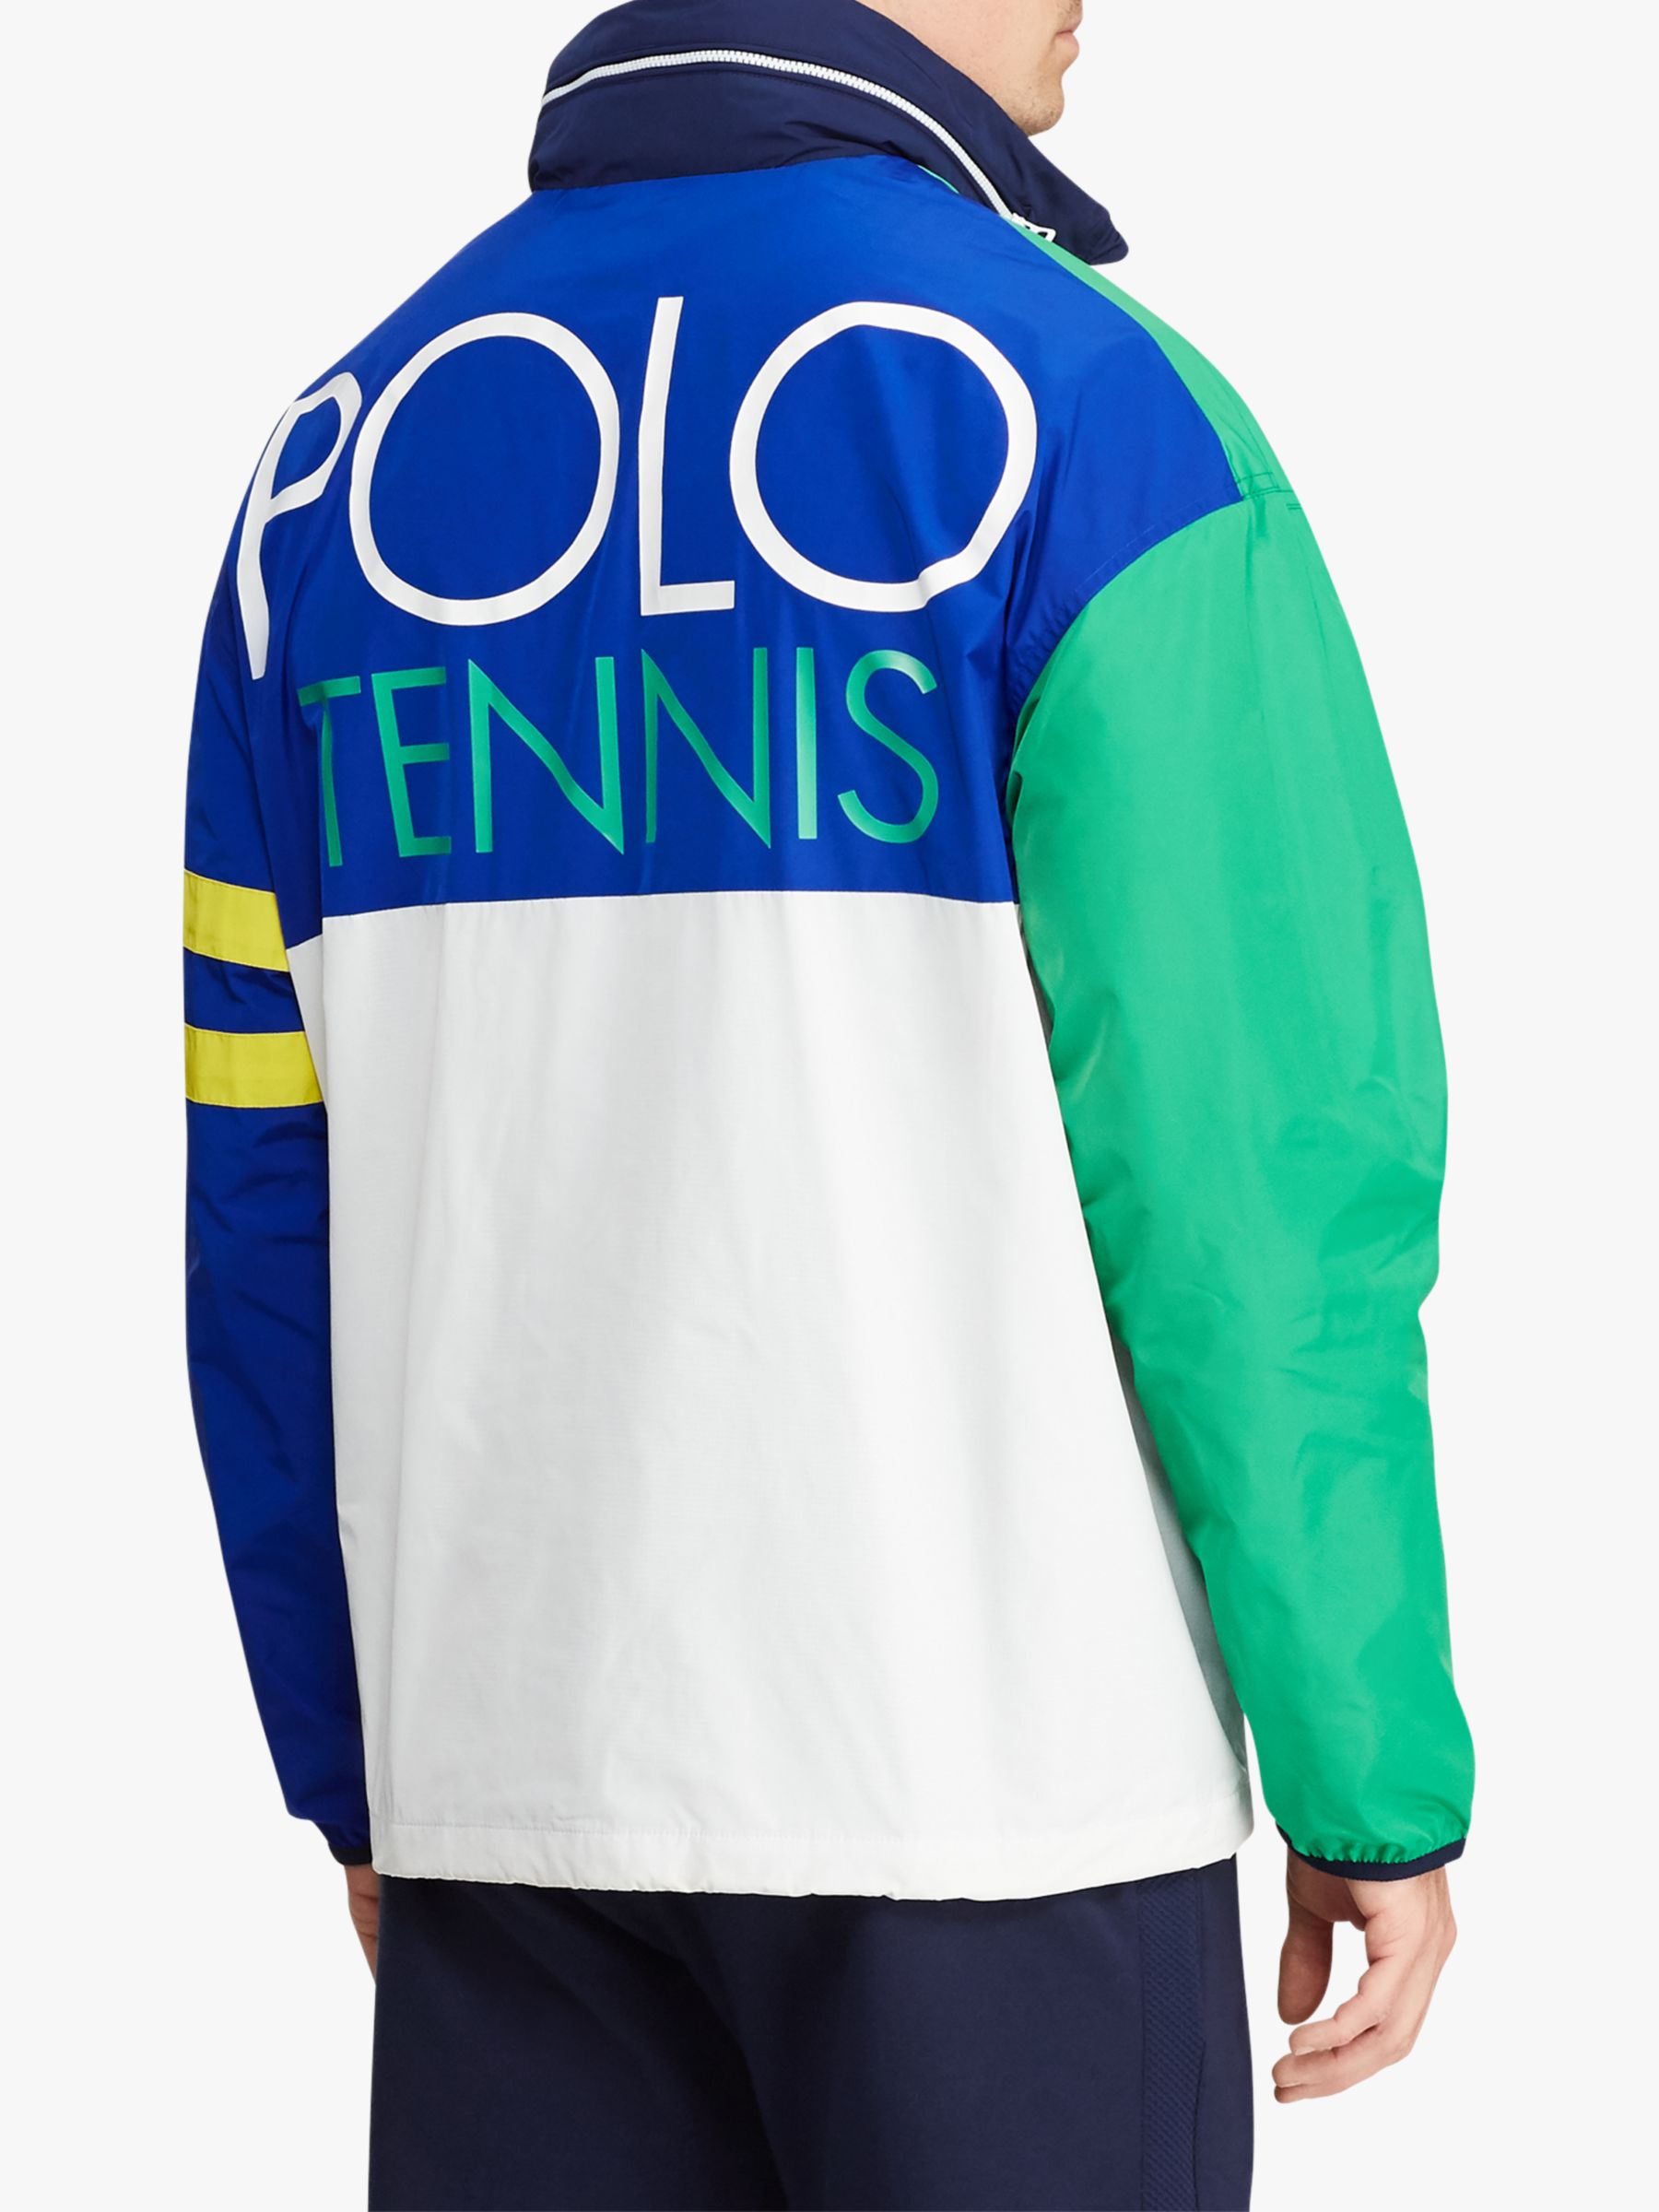 ralph lauren tennis jacket